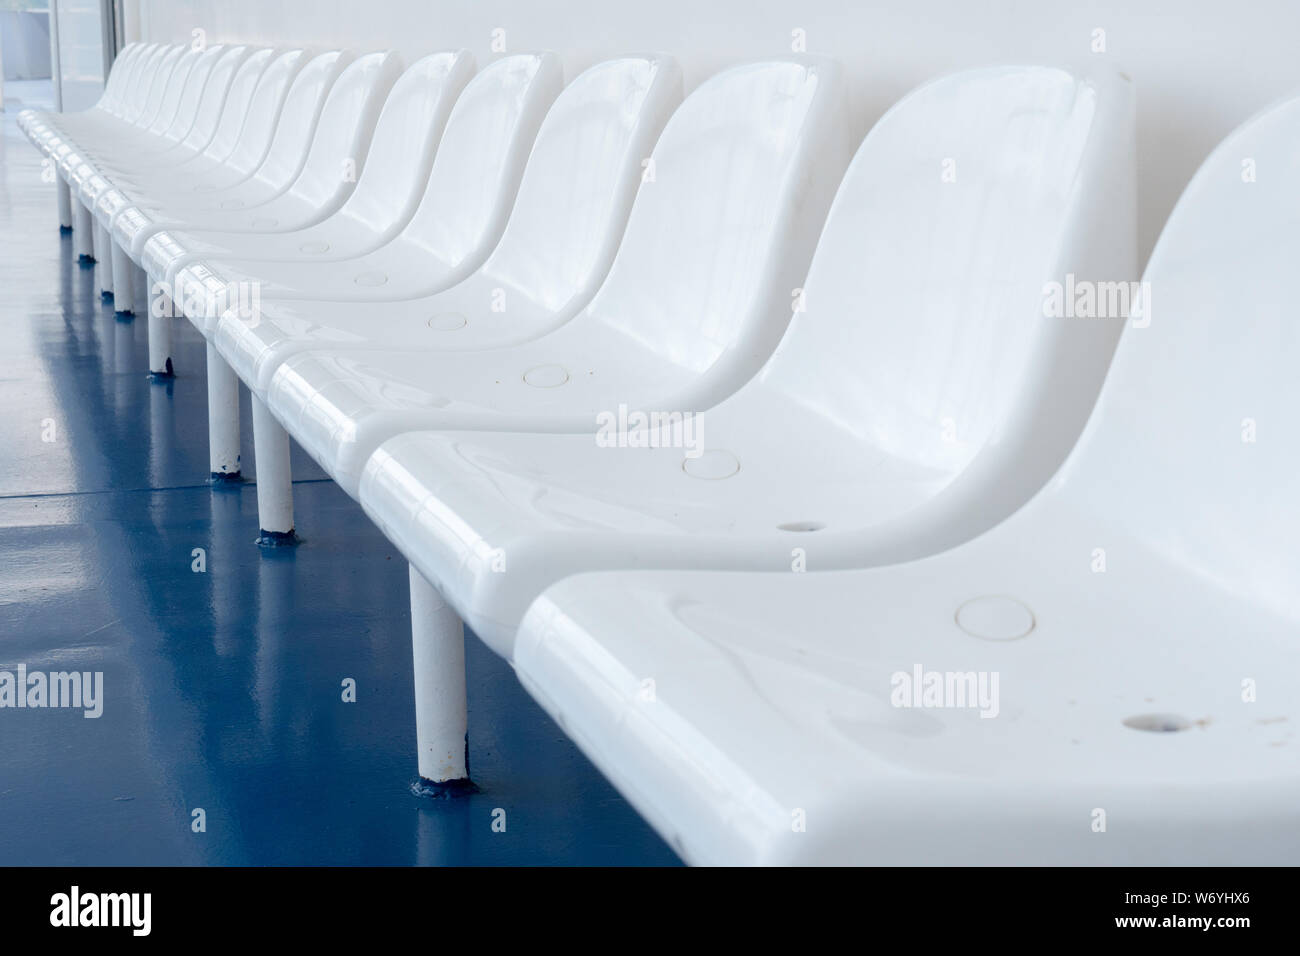 Des chaises en plastique vide sur ferry boat ship liner pour les passagers. Excursion en mer. Bonnes vacances des vacances. Rangée de chaises vides chaises blanches sur bleu-de-chaussée pour les visiteurs au reste des sièges vacants mauvaise saison touristique Banque D'Images